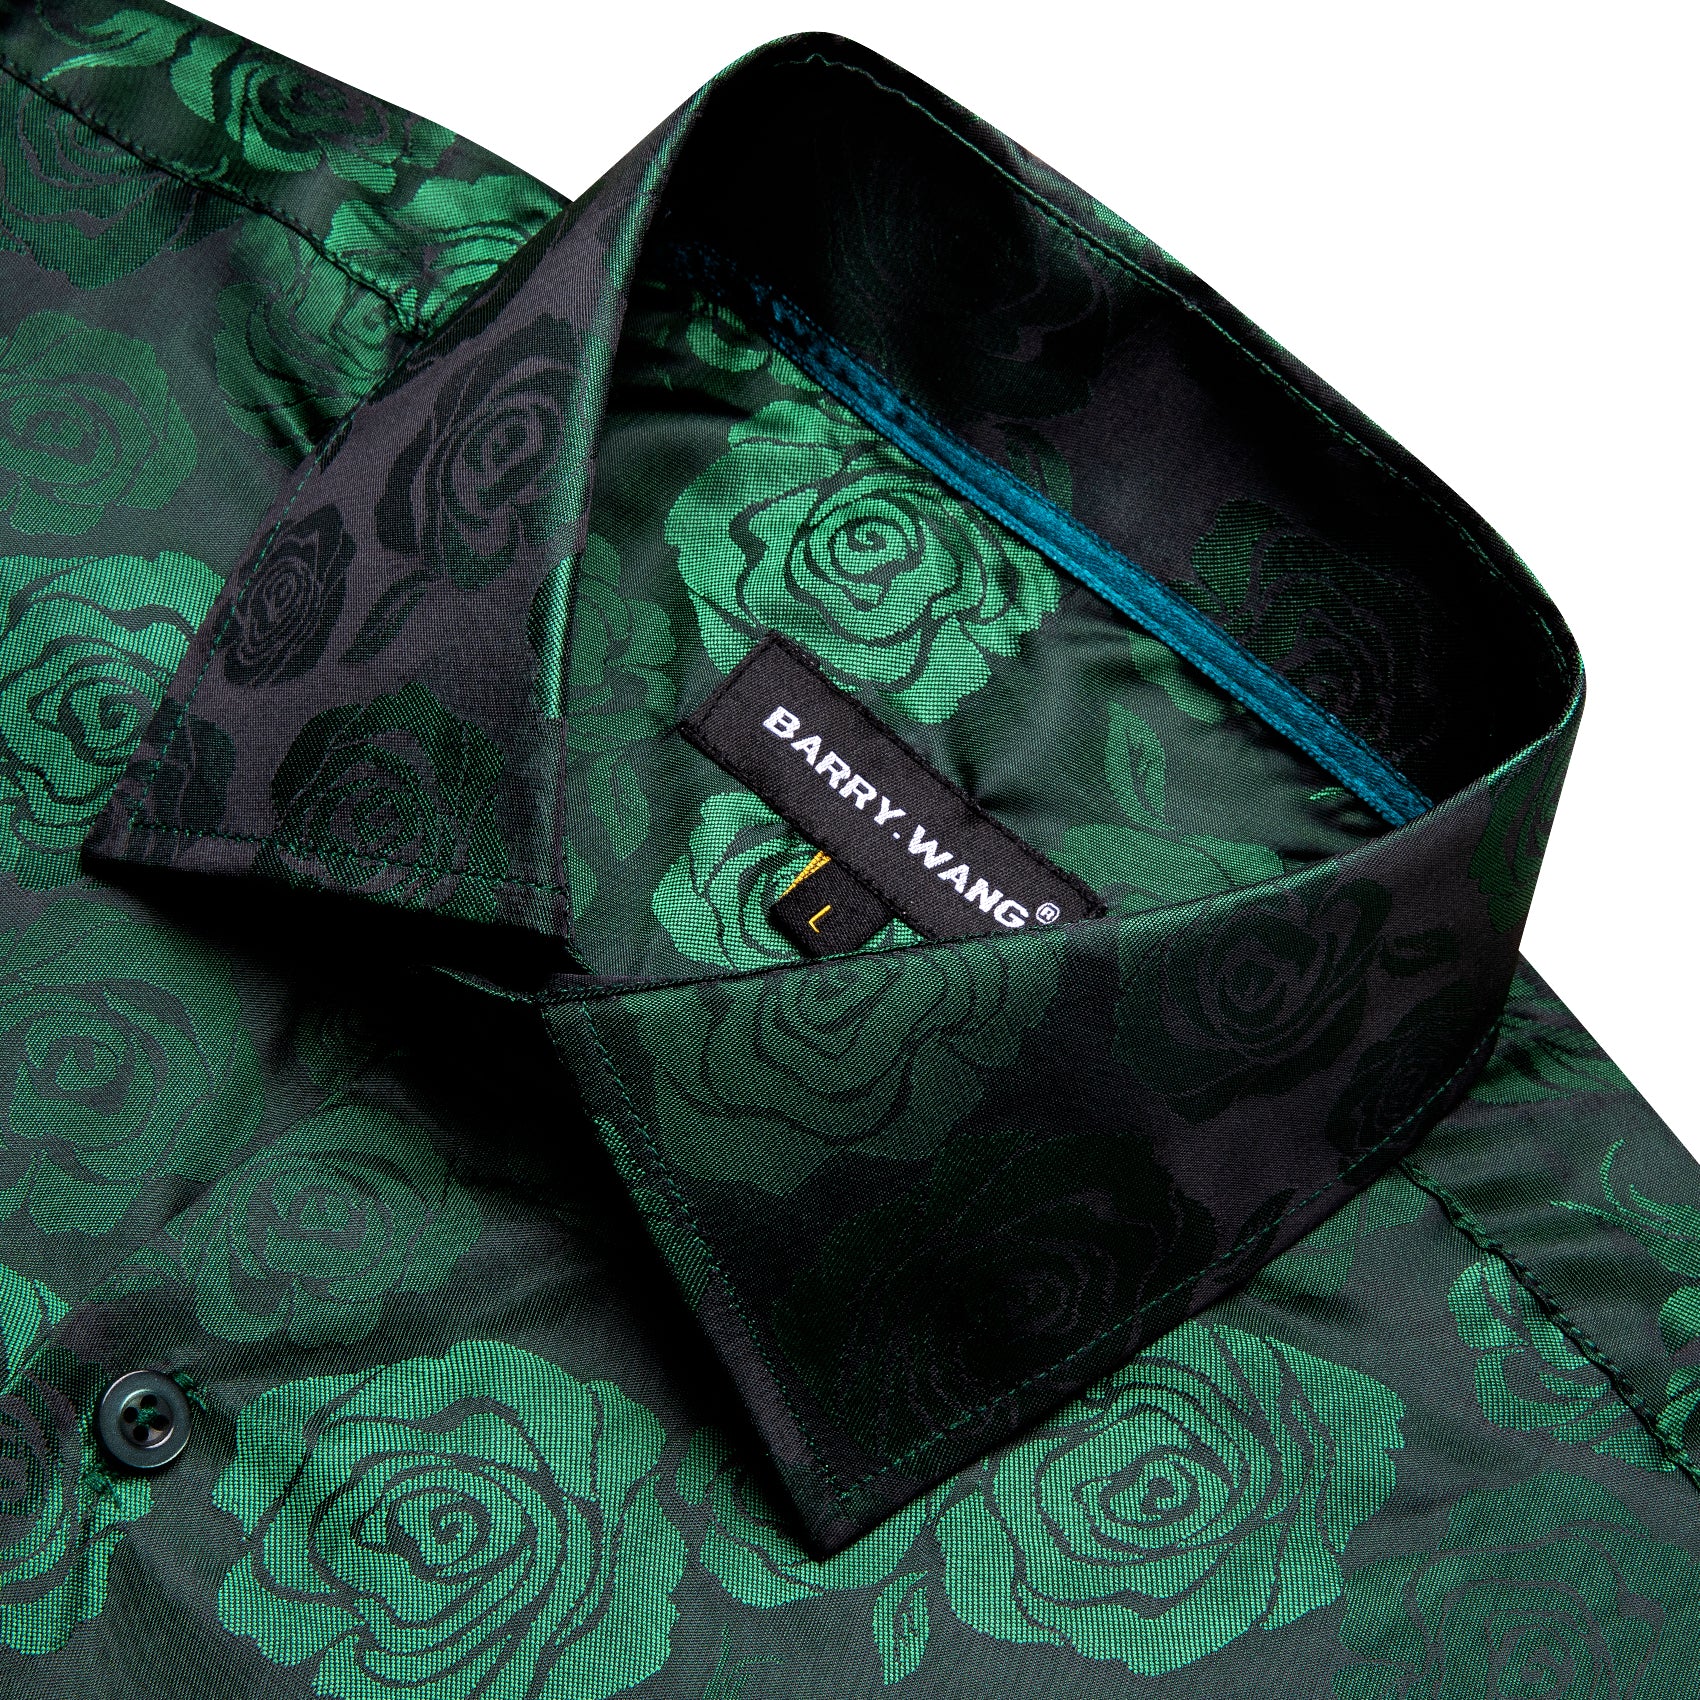 Barry.wang Green Print Flower Silk Men's Shirt